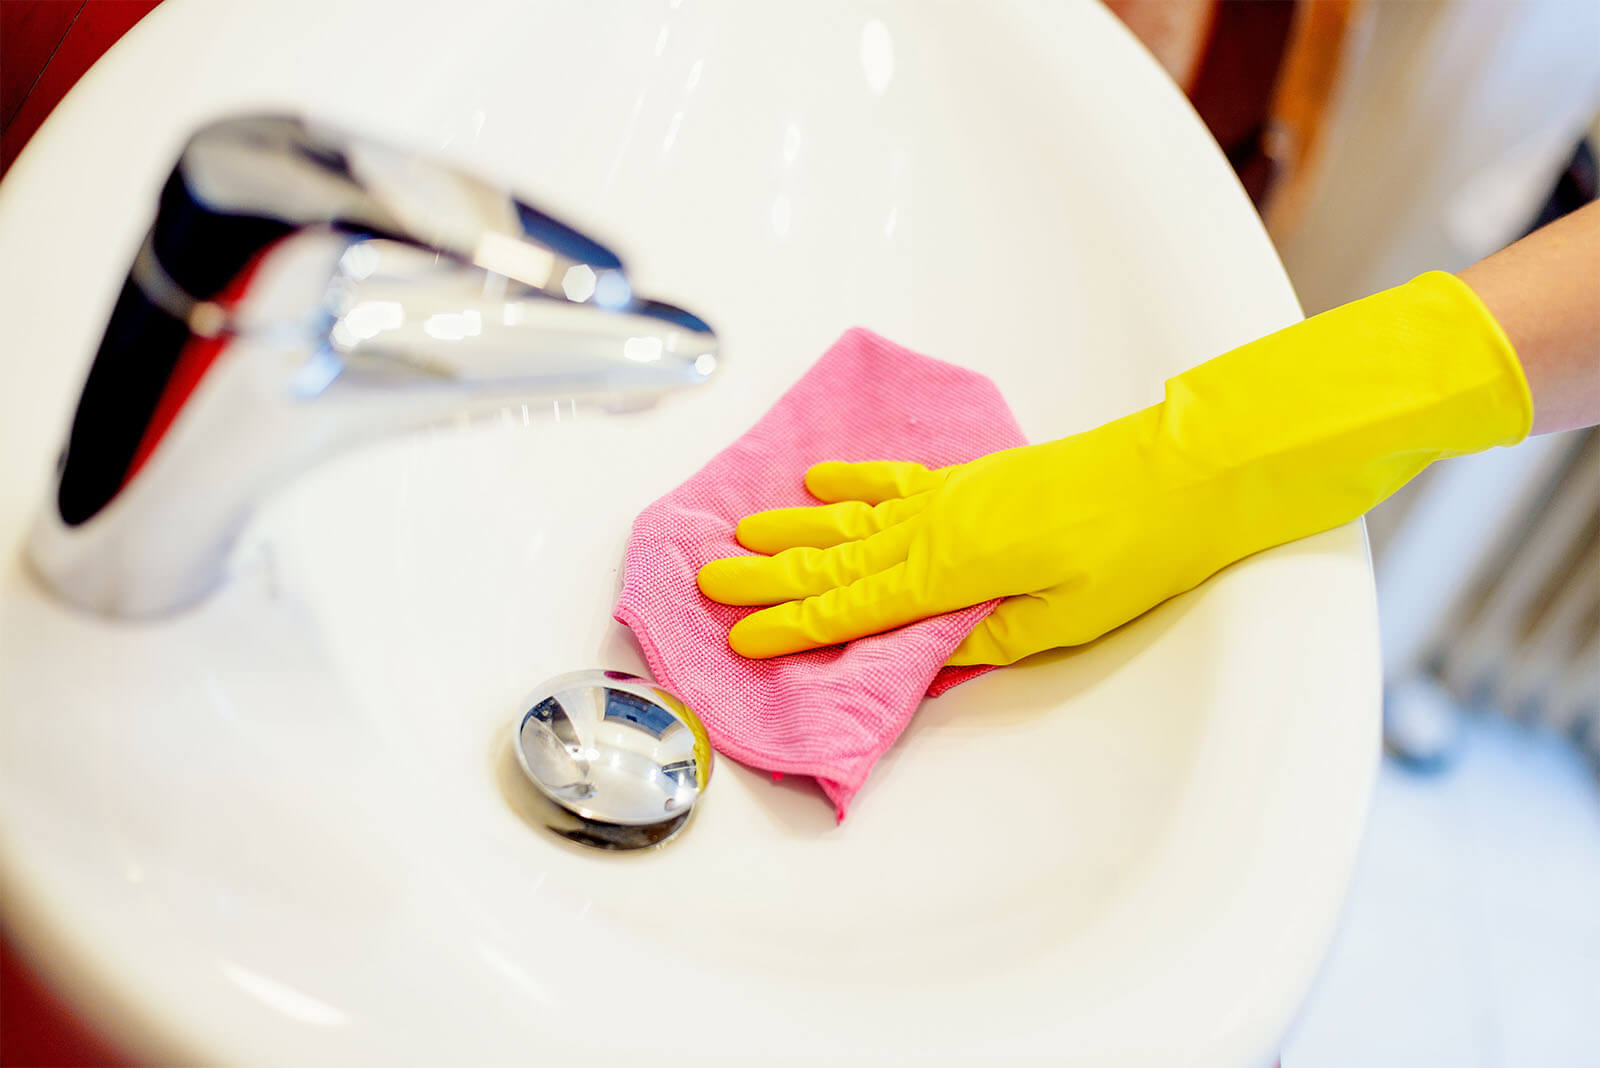 etting rid of musty bathroom sink odor